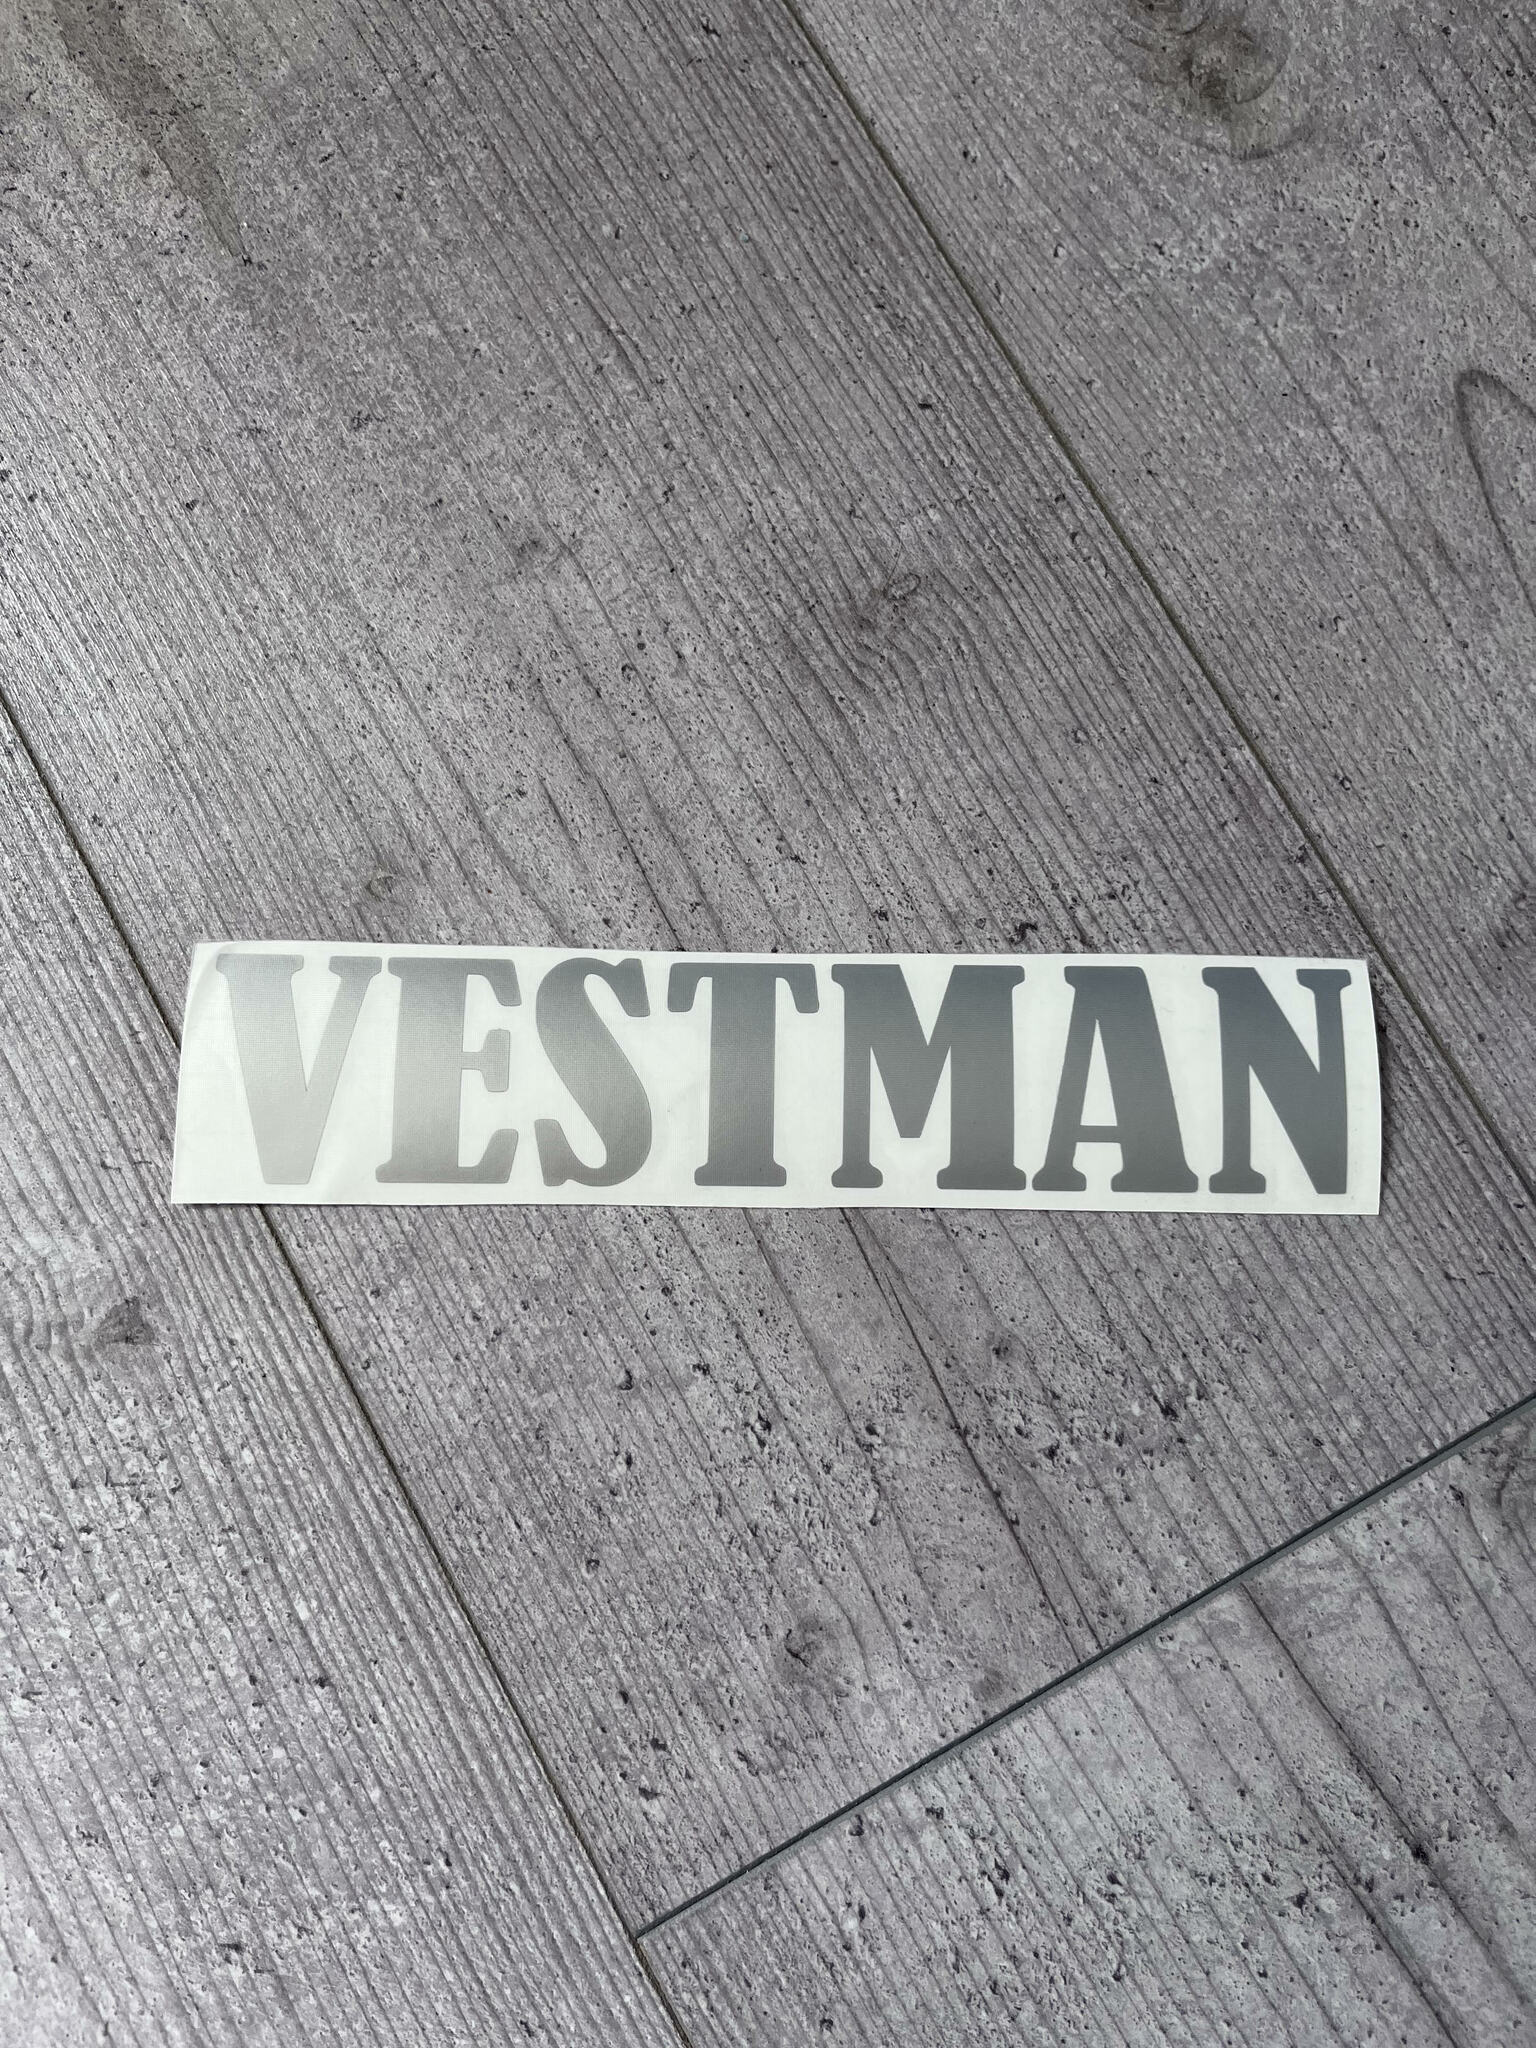 Dekal, Vestman